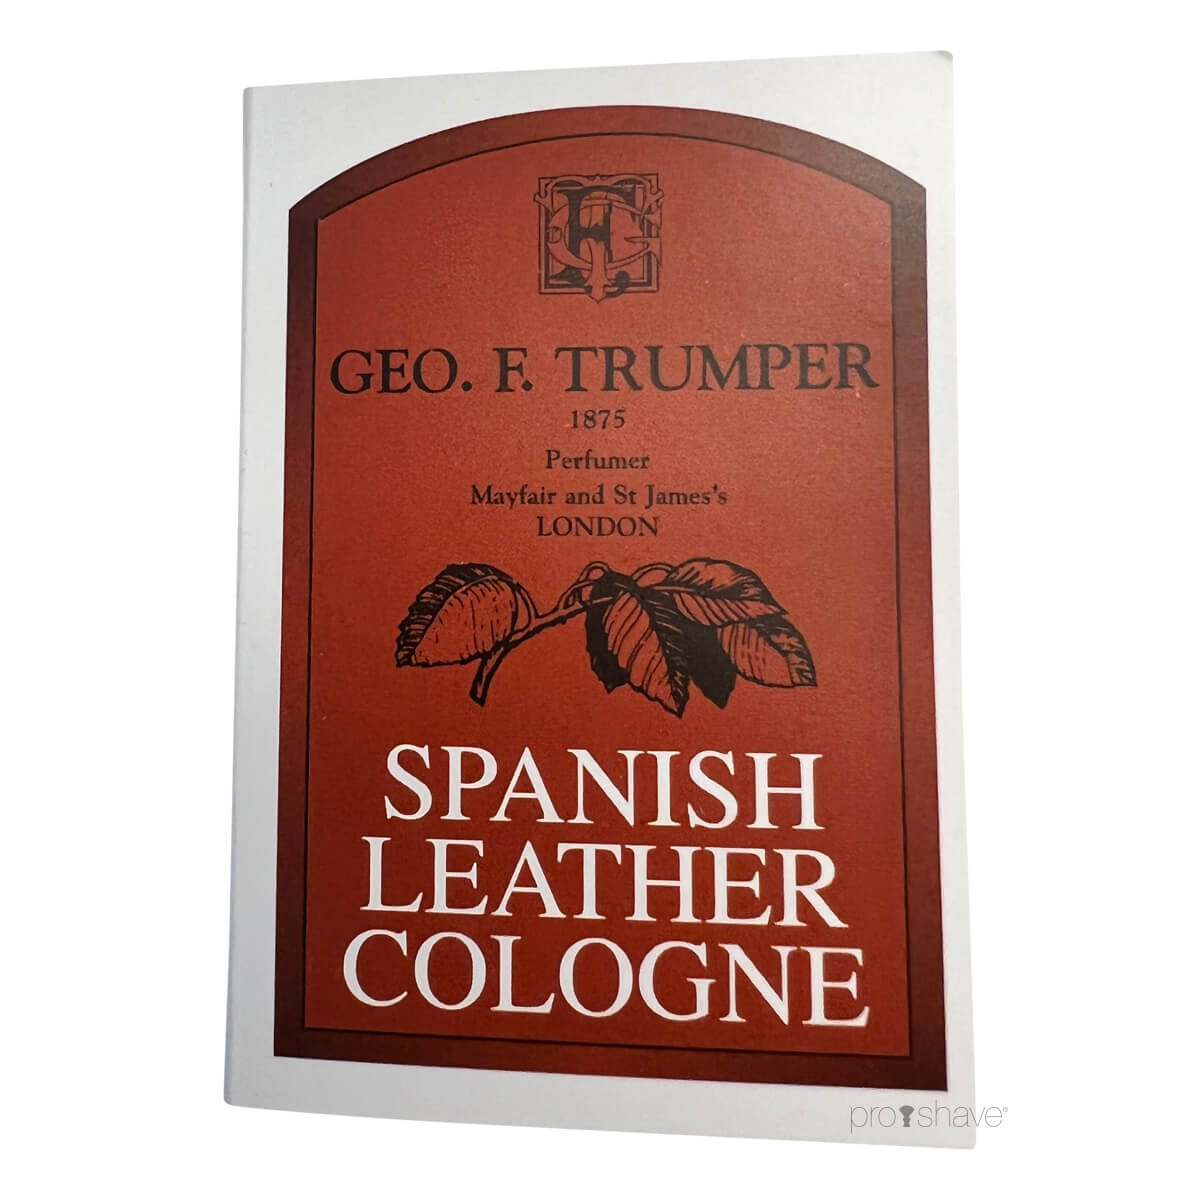 Billede af Geo F Trumper Cologne, Spanish Leather, Sample, 1 ml.